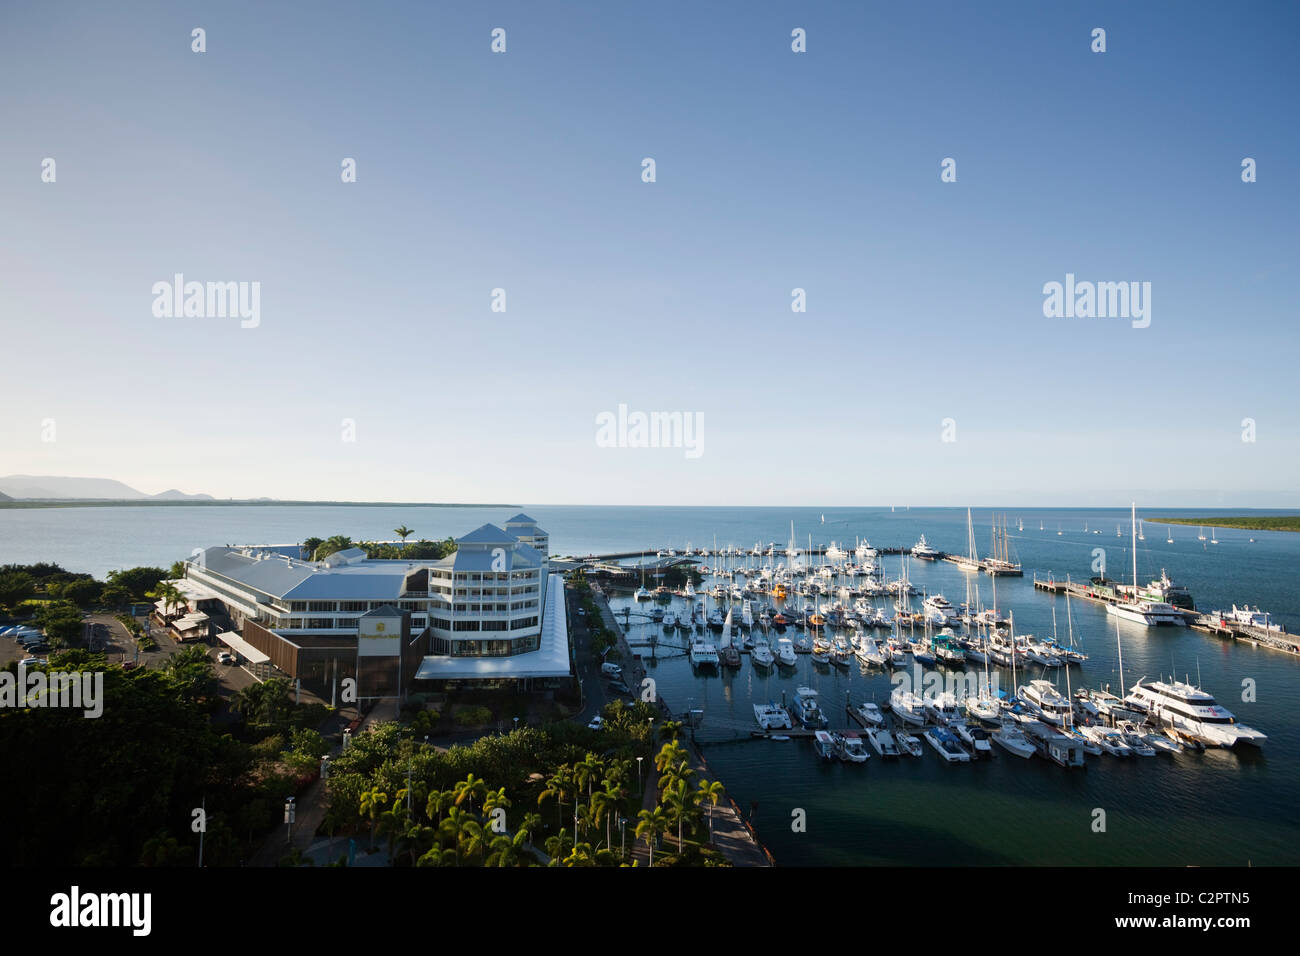 Das Shangri-La Hotel und Marlin Marina in der Abenddämmerung. Cairns, Queensland, Australien Stockfoto